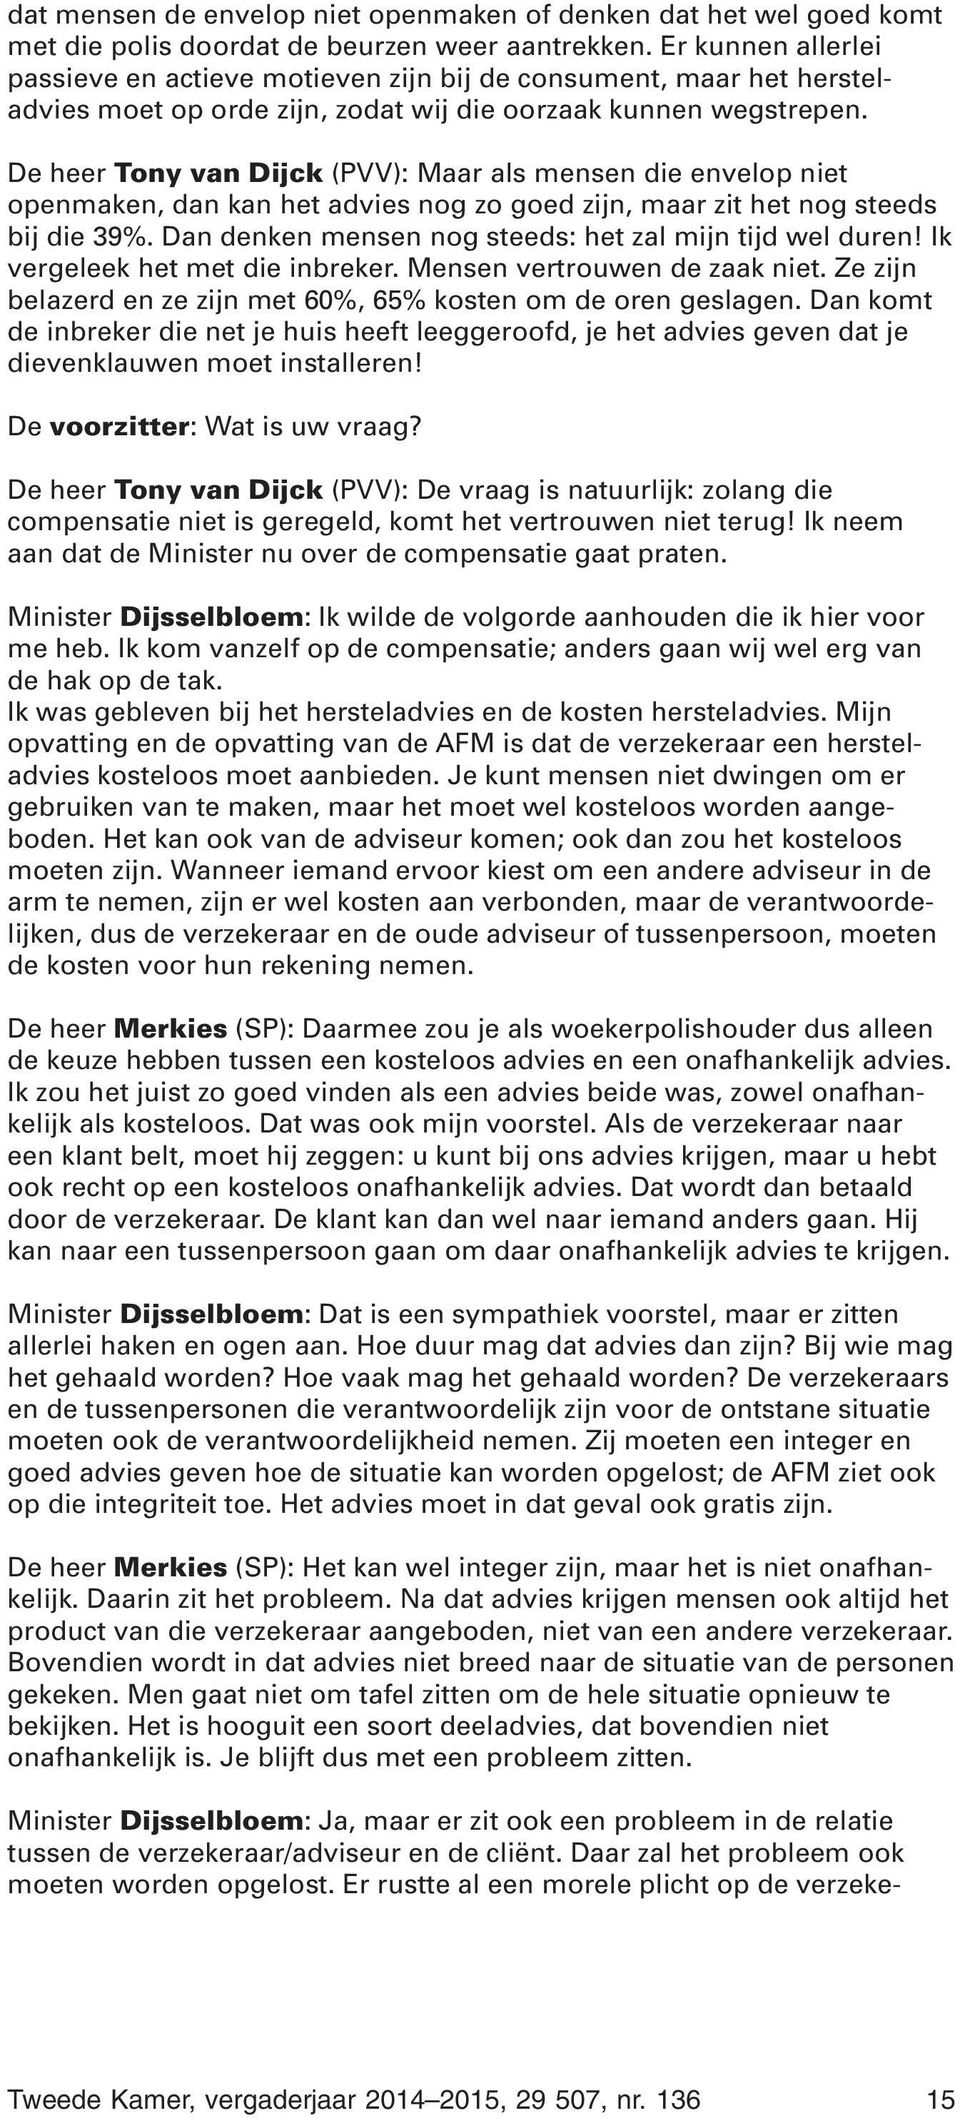 De heer Tony van Dijck (PVV): Maar als mensen die envelop niet openmaken, dan kan het advies nog zo goed zijn, maar zit het nog steeds bij die 39%.